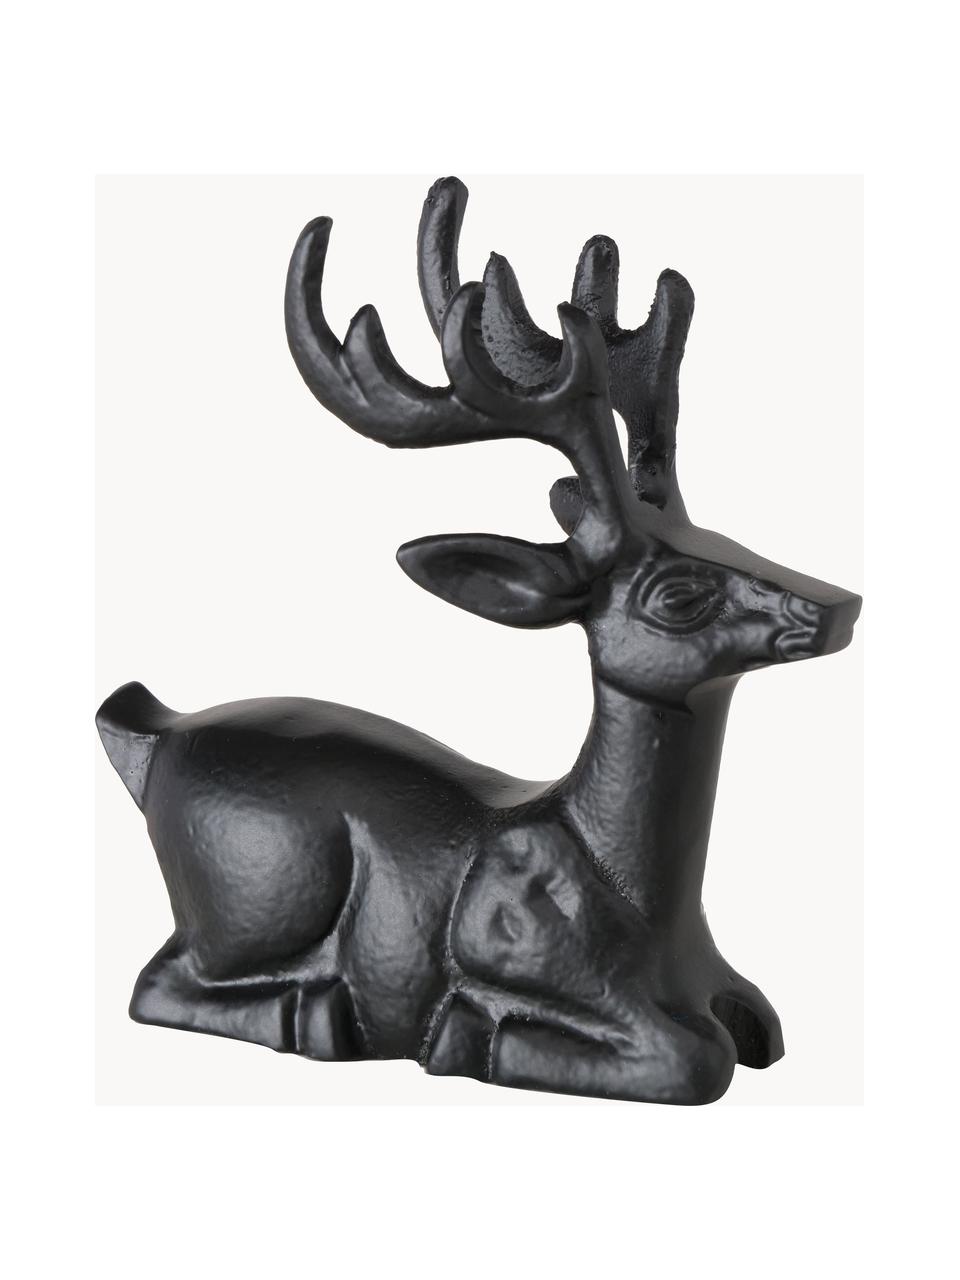 Figuras decorativas ciervos artesanales Tuxel, 2 uds., Aluminio pintado, Negro, Set de diferentes tamaños